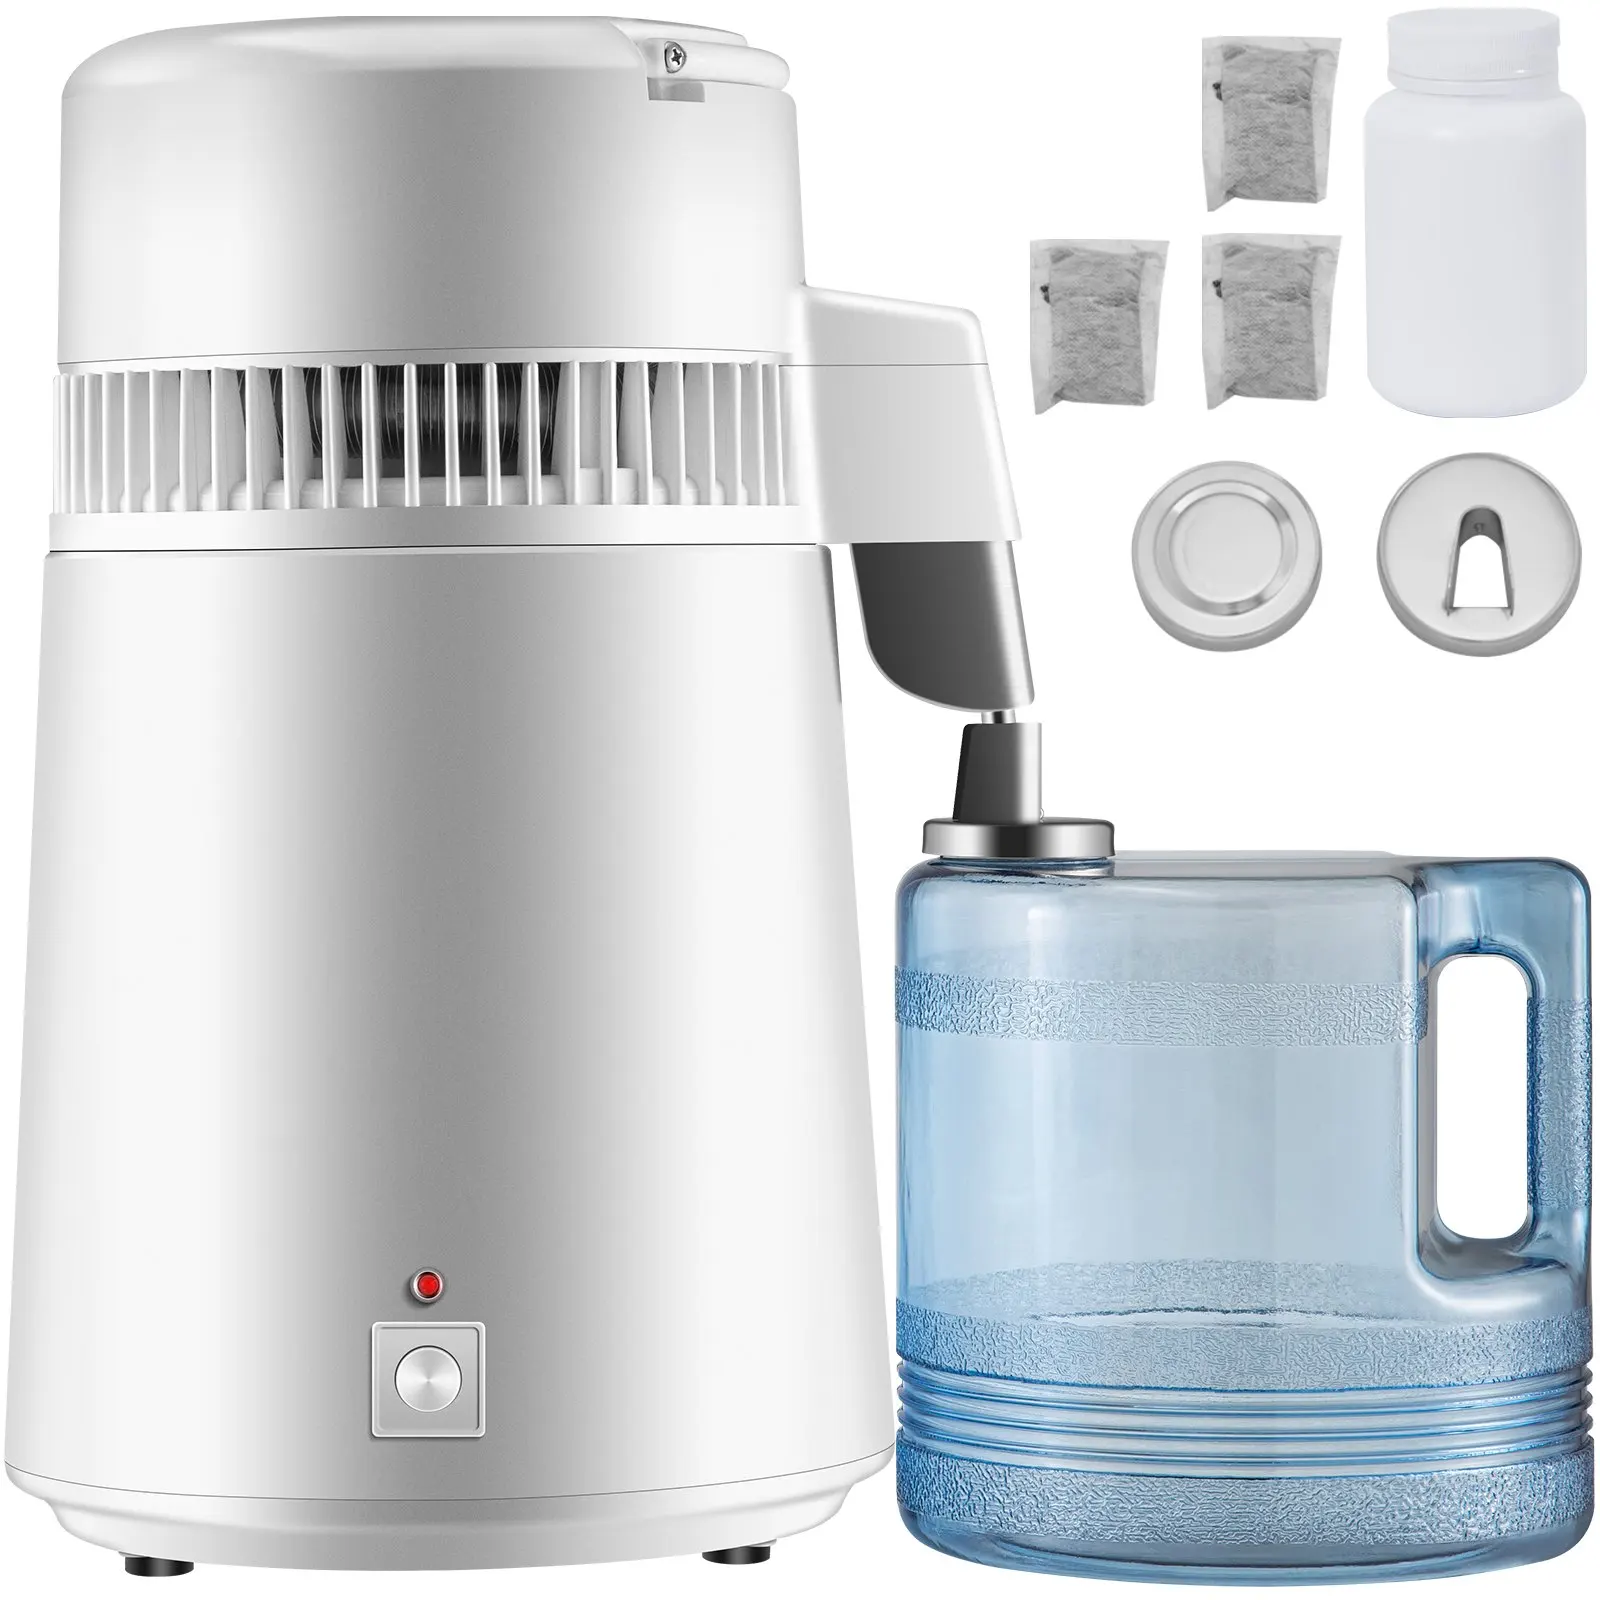 4l-distillatore-d'acqua-purificatore-filtro-dispenser-riscaldamento-bottiglia-ammorbidente-304-in-acciaio-inox-750w-macchina-distillatore-d'acqua